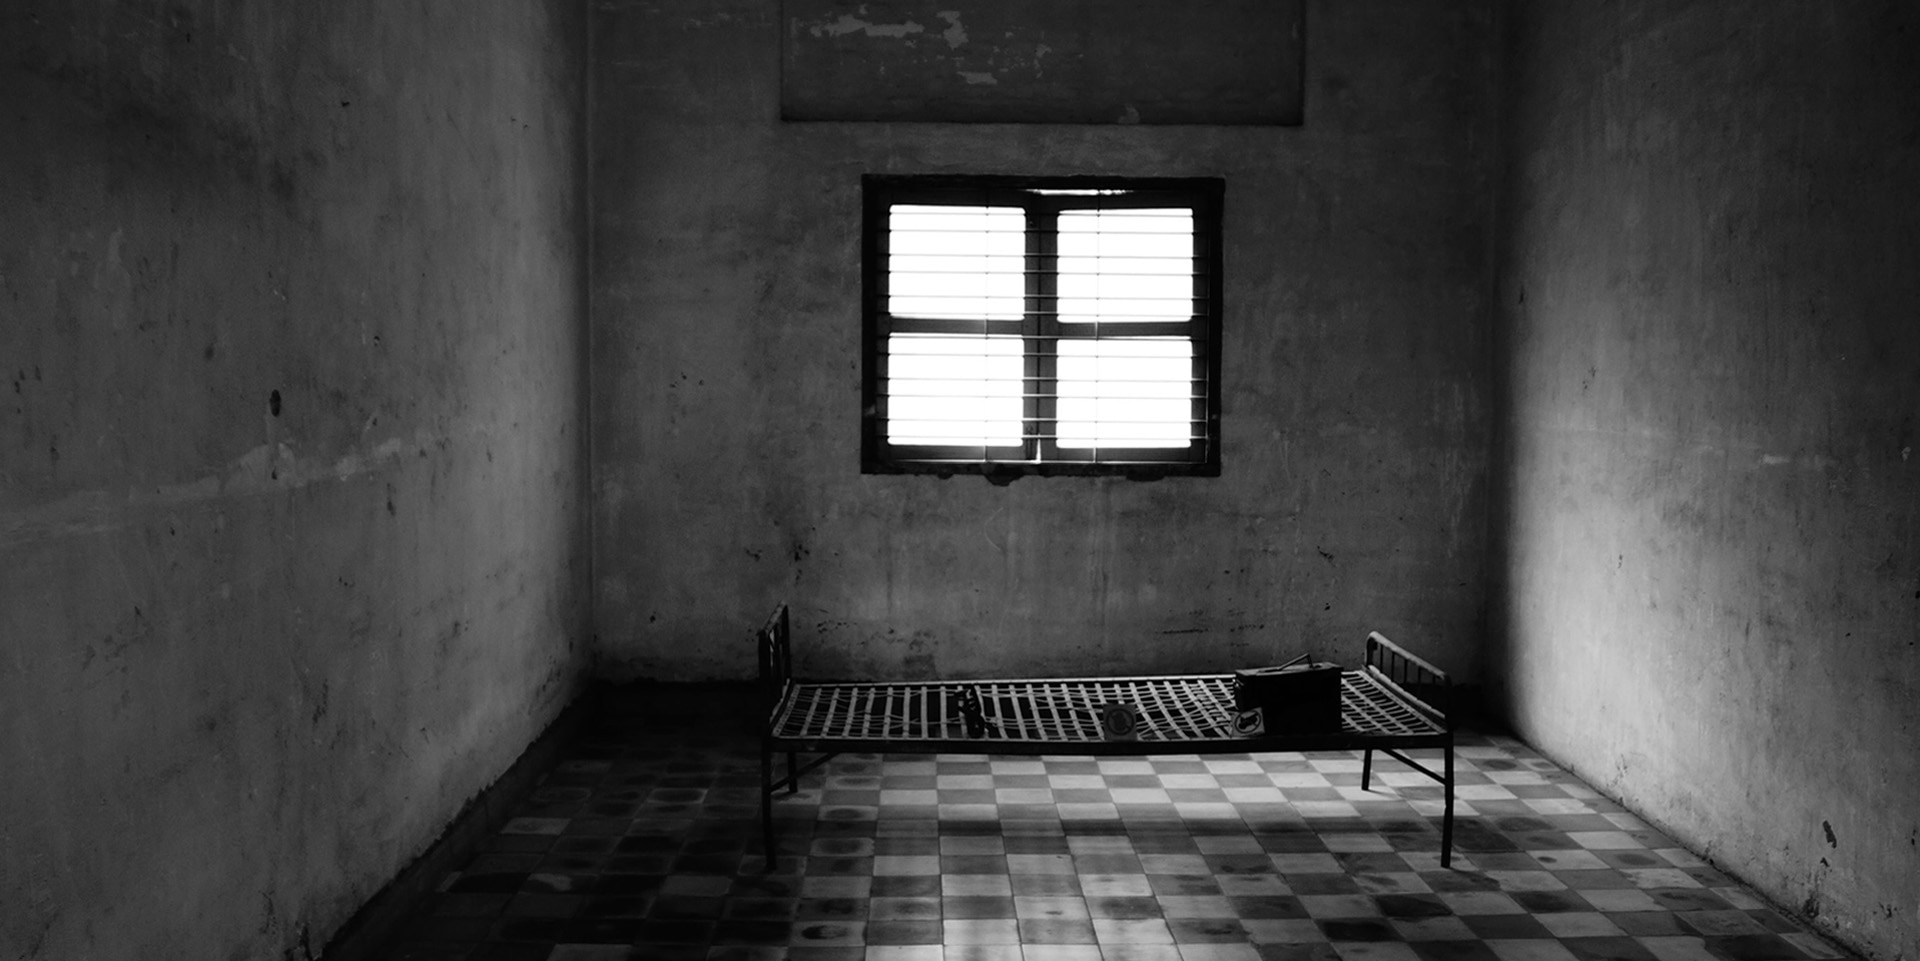 L'image montre une cellule avec une fenêtre et un cadre de lit en noir et blanc.